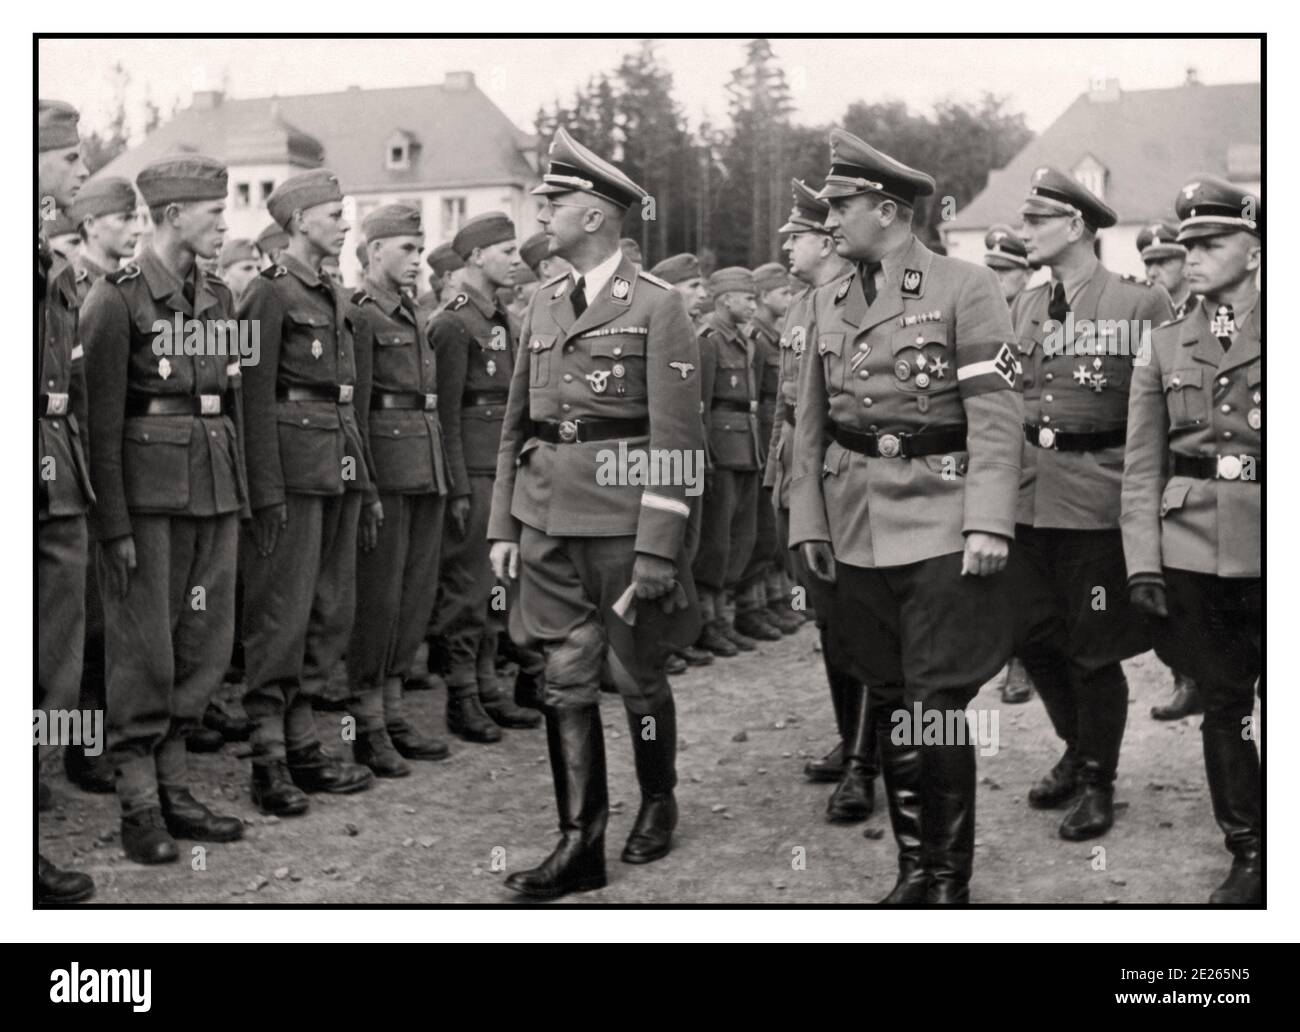 HIMMLER Propagandafoto des Reichsführers vom Schutzstaffel Heinrich Himmler und Artur Axmann Kopf der Hitlerjugend Inspektion Ausbildung Rekruten in 1943 Zweiten Weltkrieg Krieg Nazi Deutschland Stockfoto